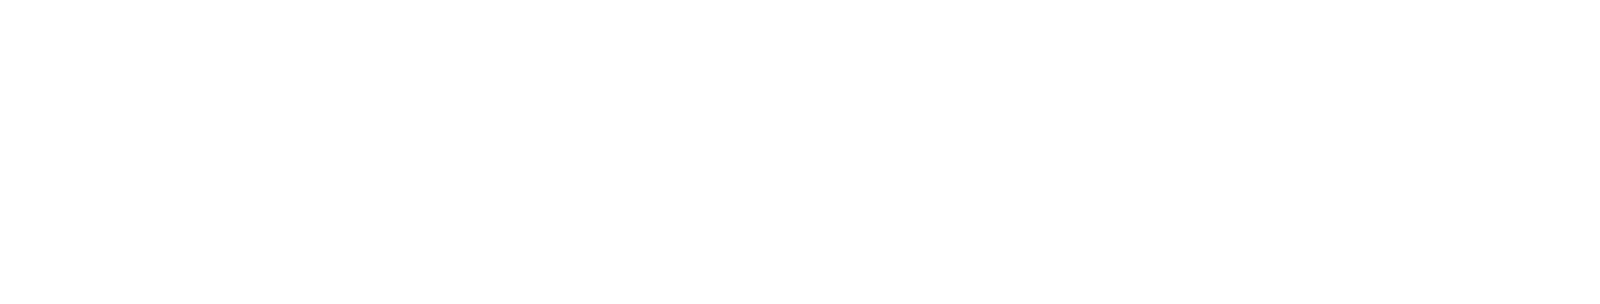 Tencent logo large for dark backgrounds (transparent PNG)